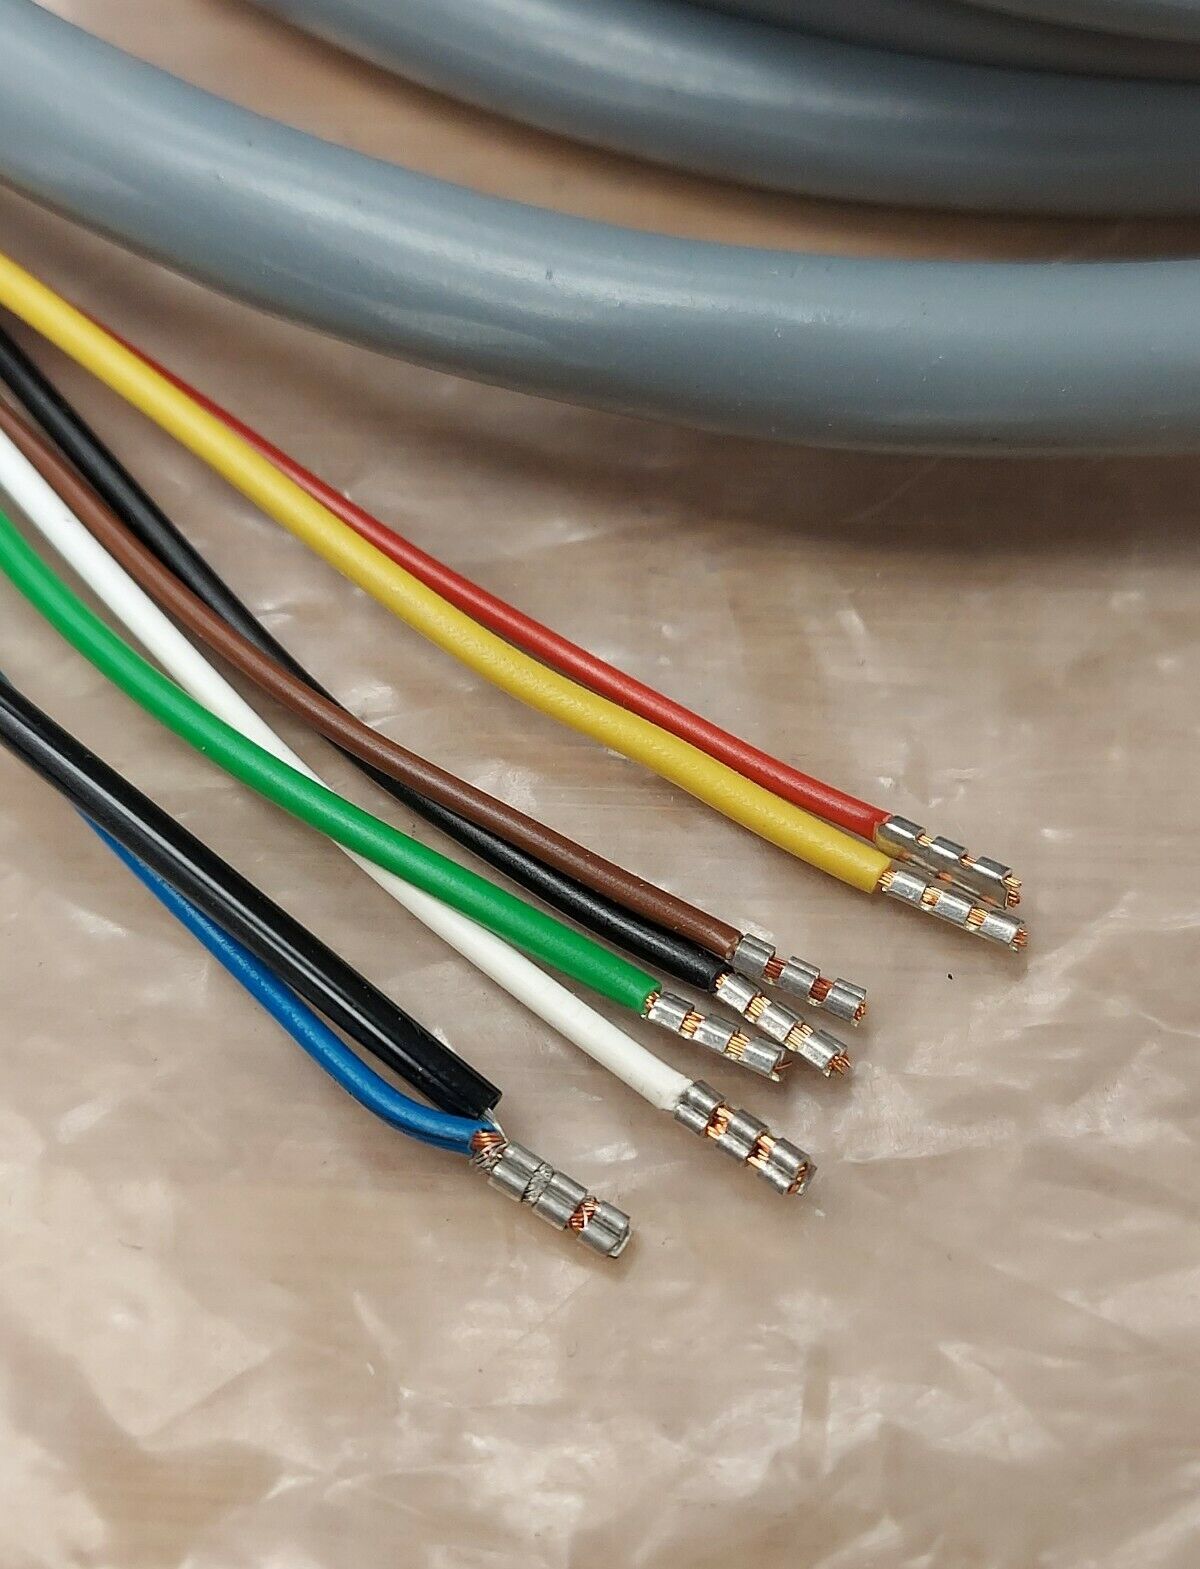 Sick Lut 1-4-KR06 New Cable 6M for Lut 1-4 PN# 2006860 (CBL100)